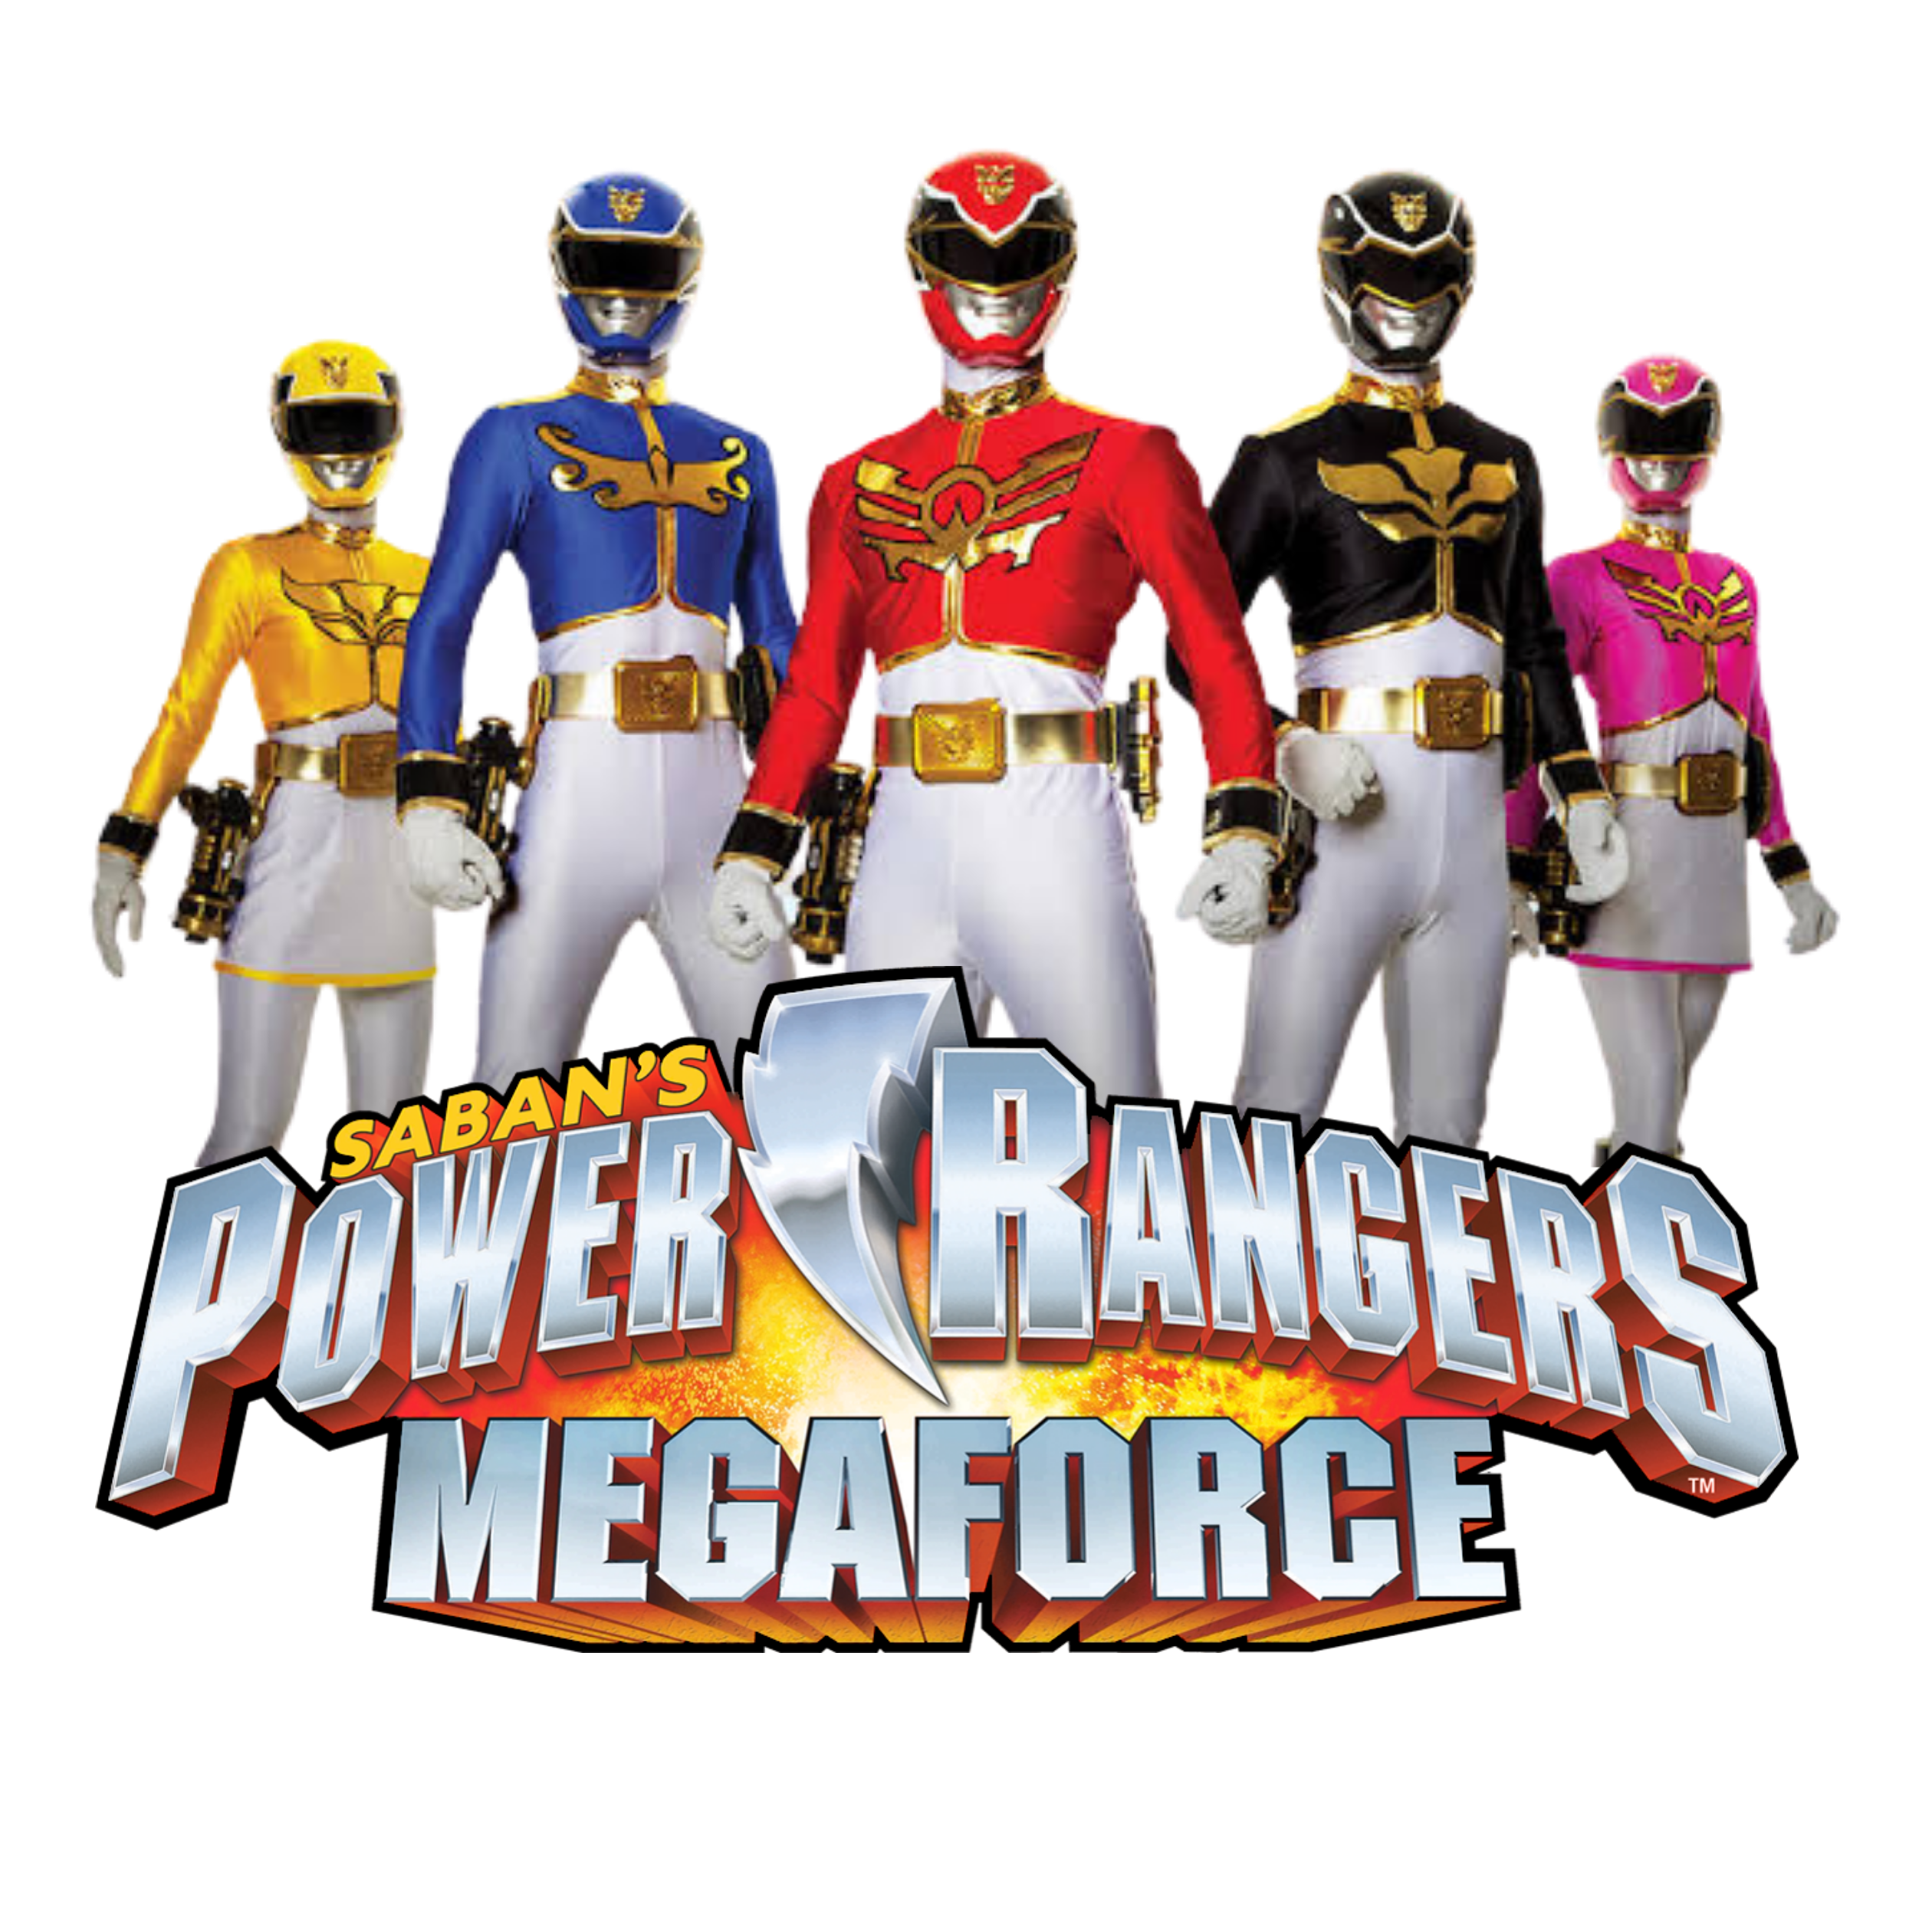 Power Rangers: Megaforce, Dublapédia